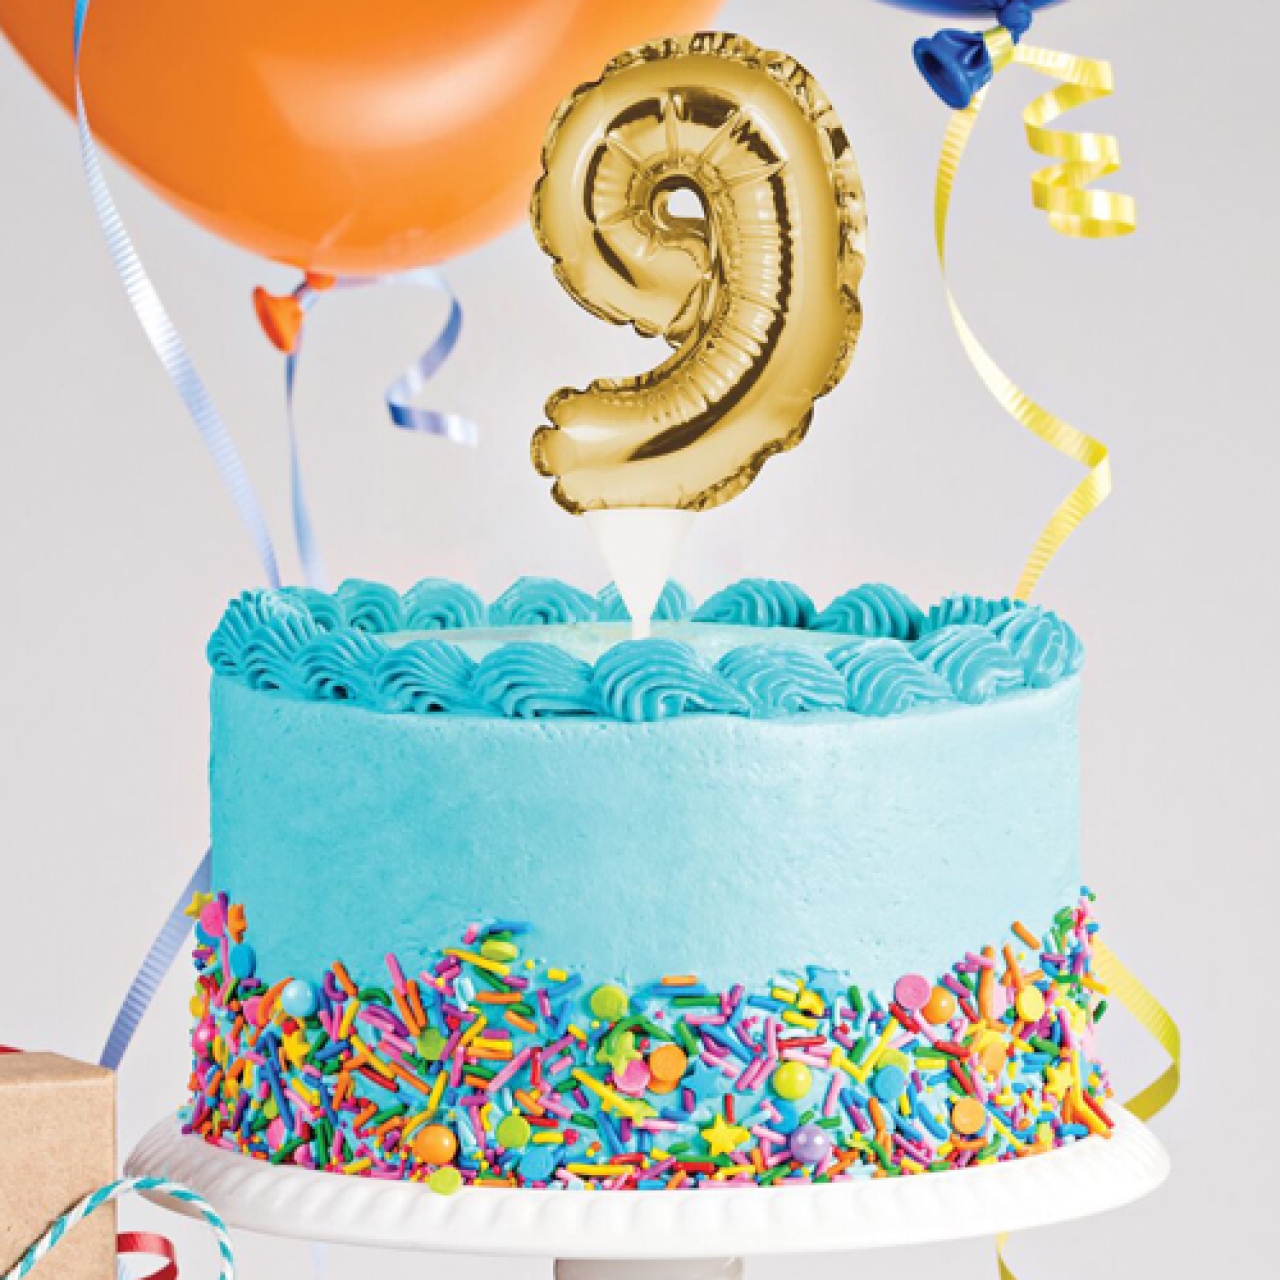 Kuchen zum Aufblasen Geburtstagstorte party Dekoration Kuchen Ballon Chocolat 